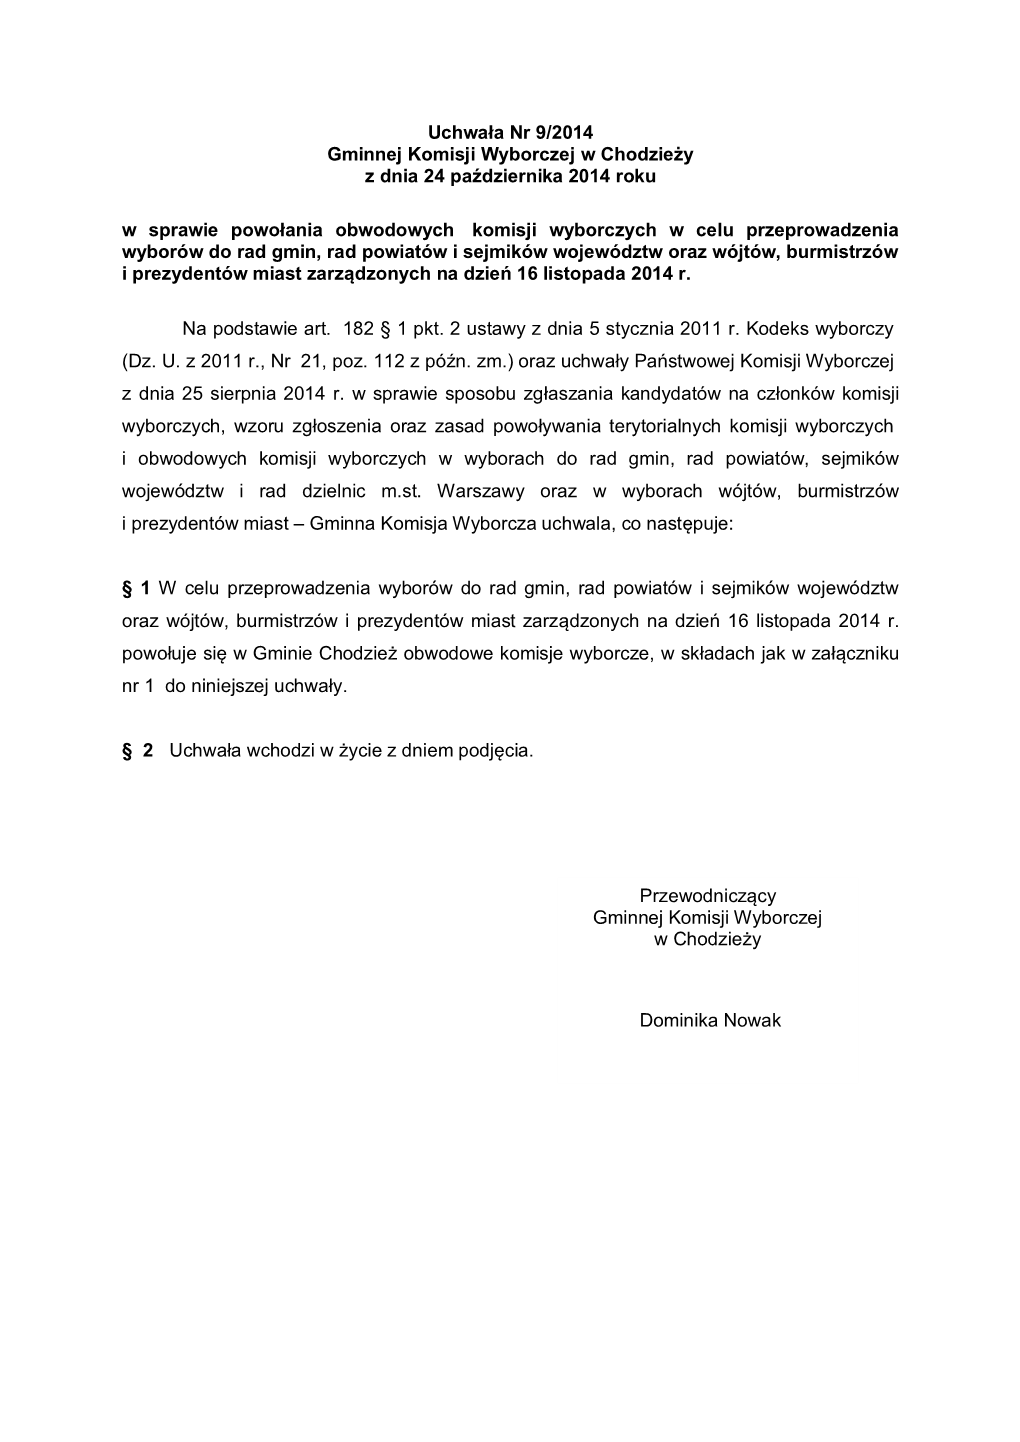 Przewodniczący Gminnej Komisji Wyborczej W Chodzieży Dominika Nowak Uchwała Nr 9/2014 Gminnej Komisji Wyborczej W Chodzieży